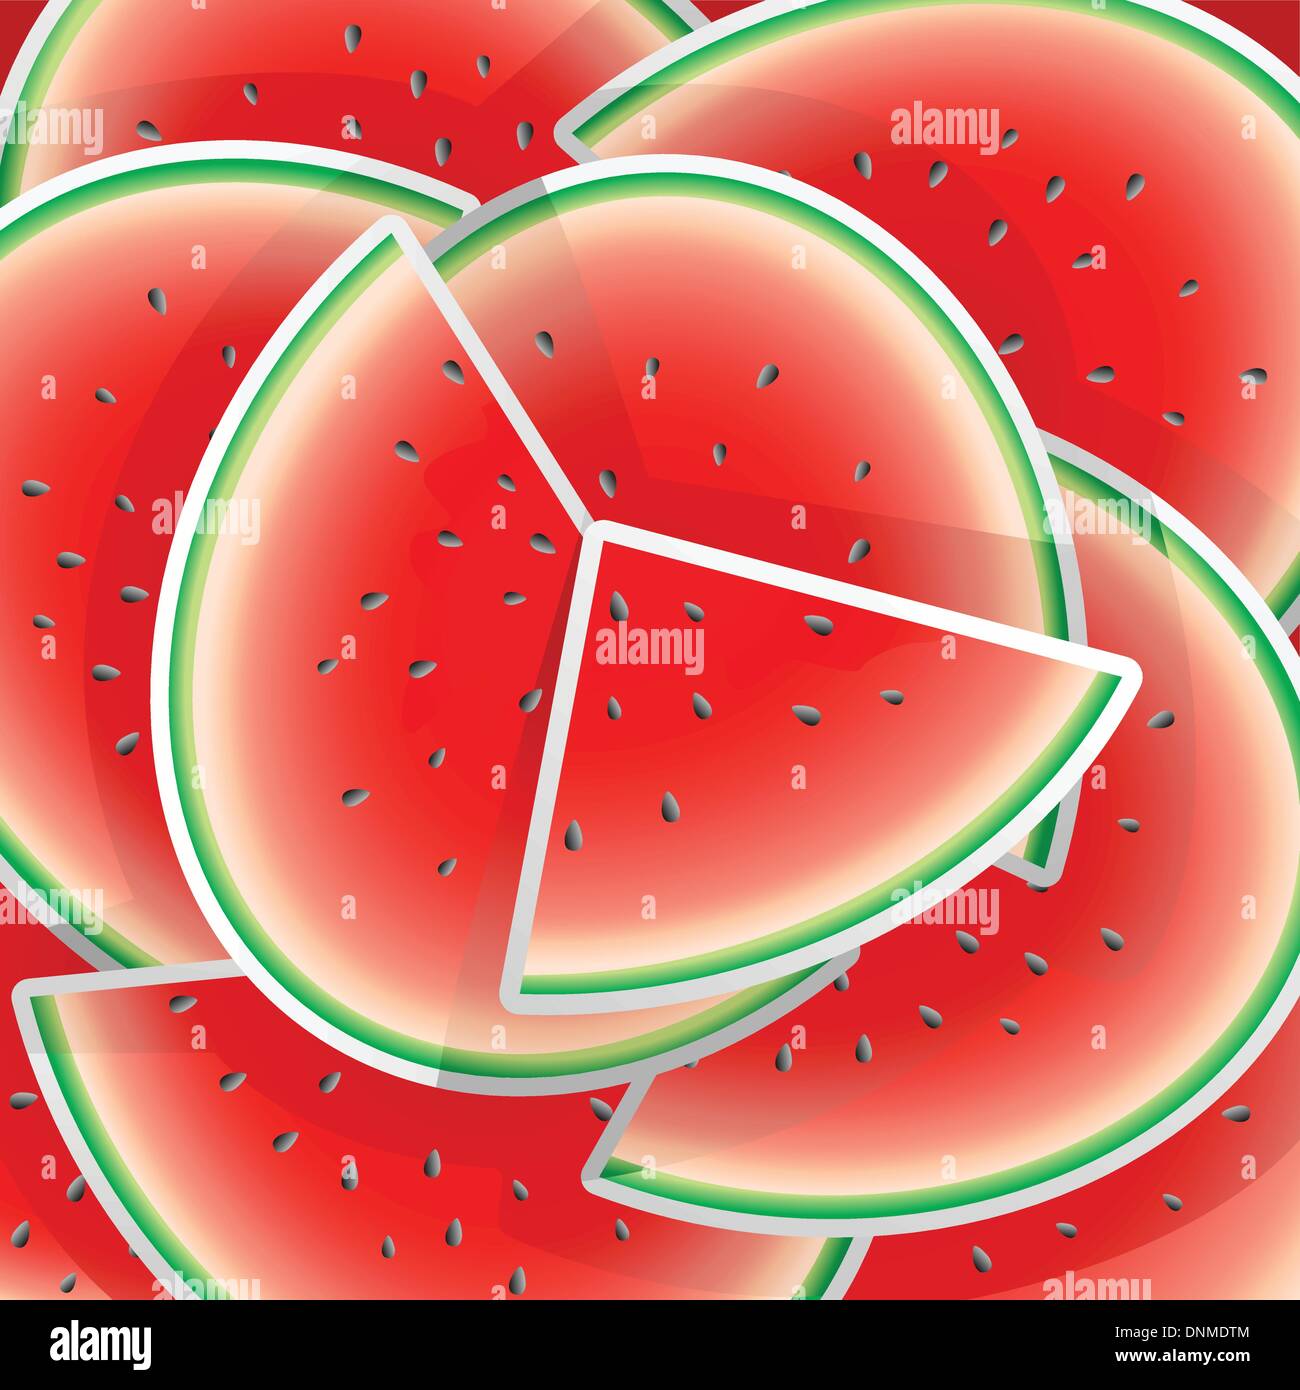 Eine Vektor-Illustration der Wassermelone-Muster-design Stock Vektor